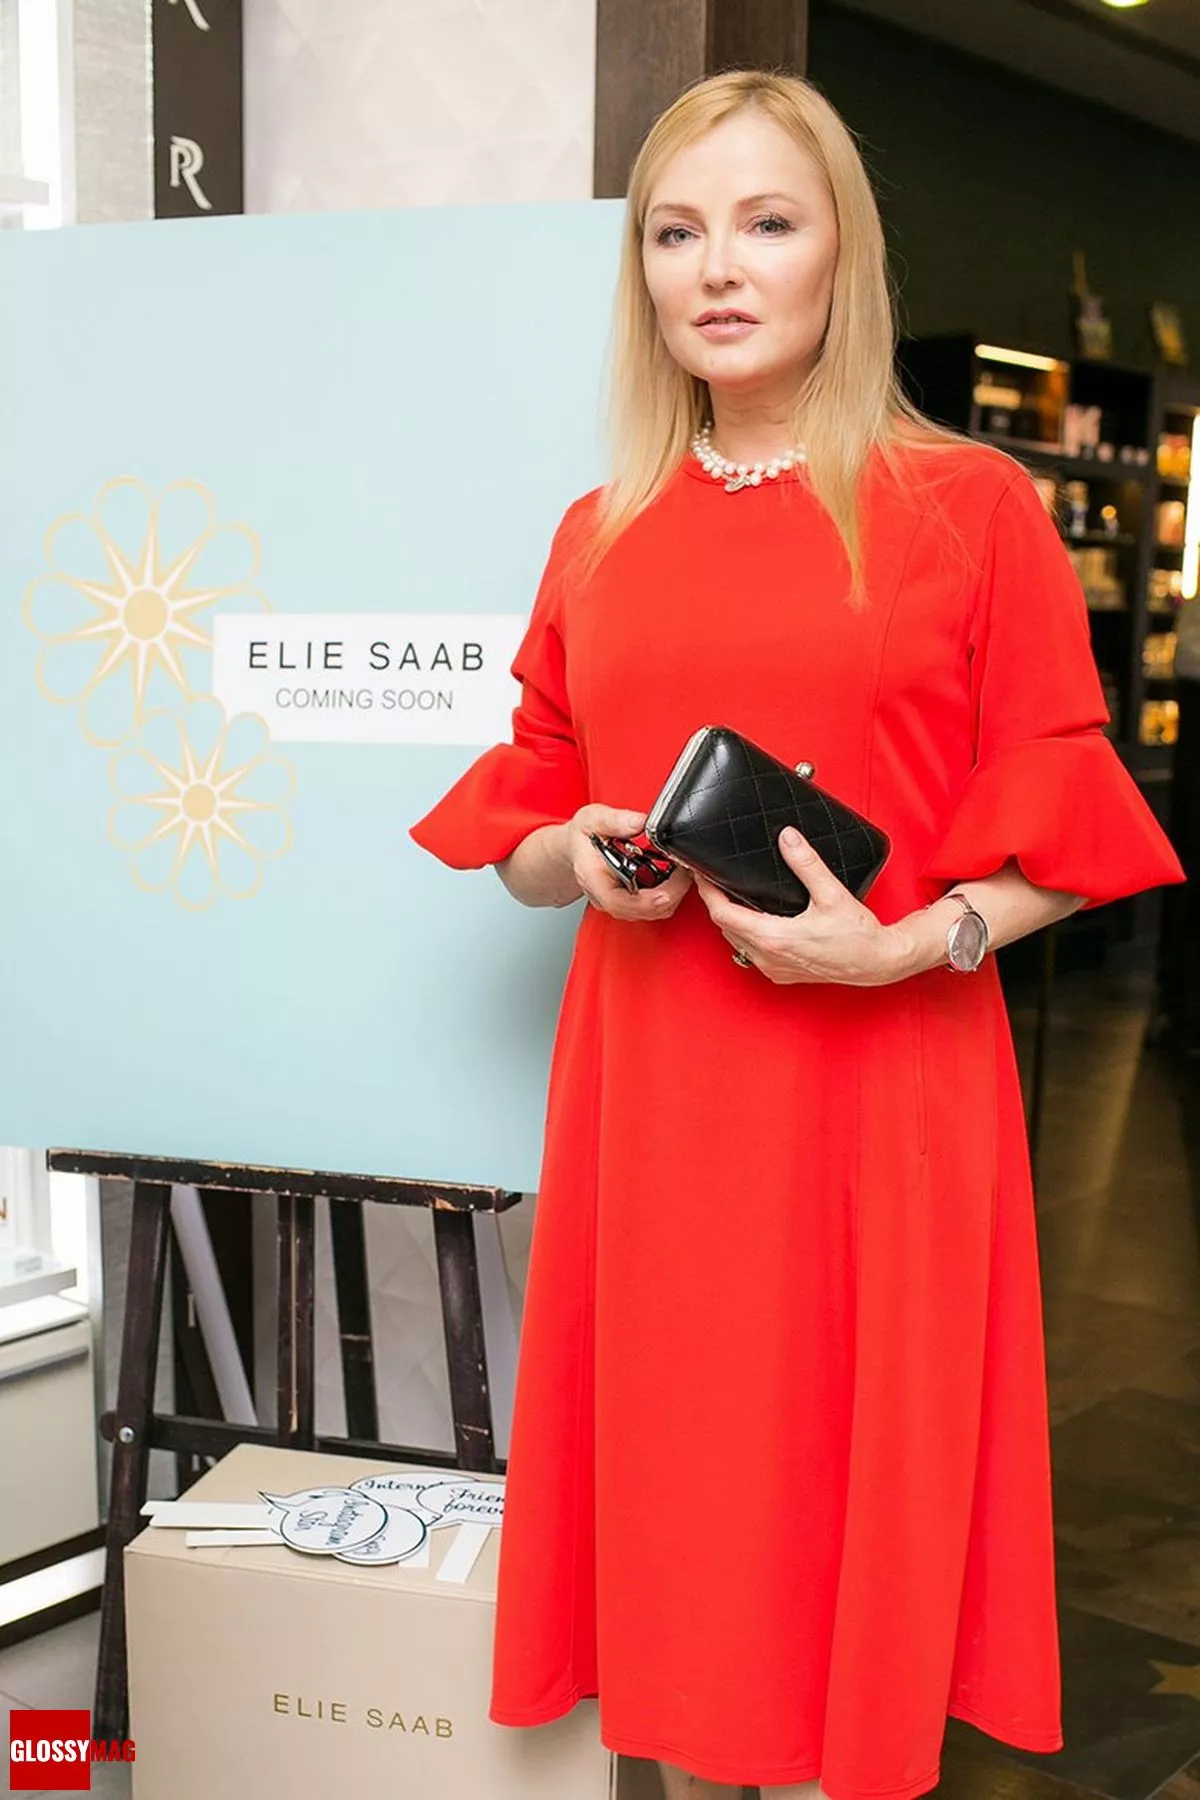 Лариса Вербицкая в корнере Elie Saab на закрытом мероприятии Beauty CHOICE в Rivoli Perfumery в ТГ Модный сезон, 28 июня 2017 г.